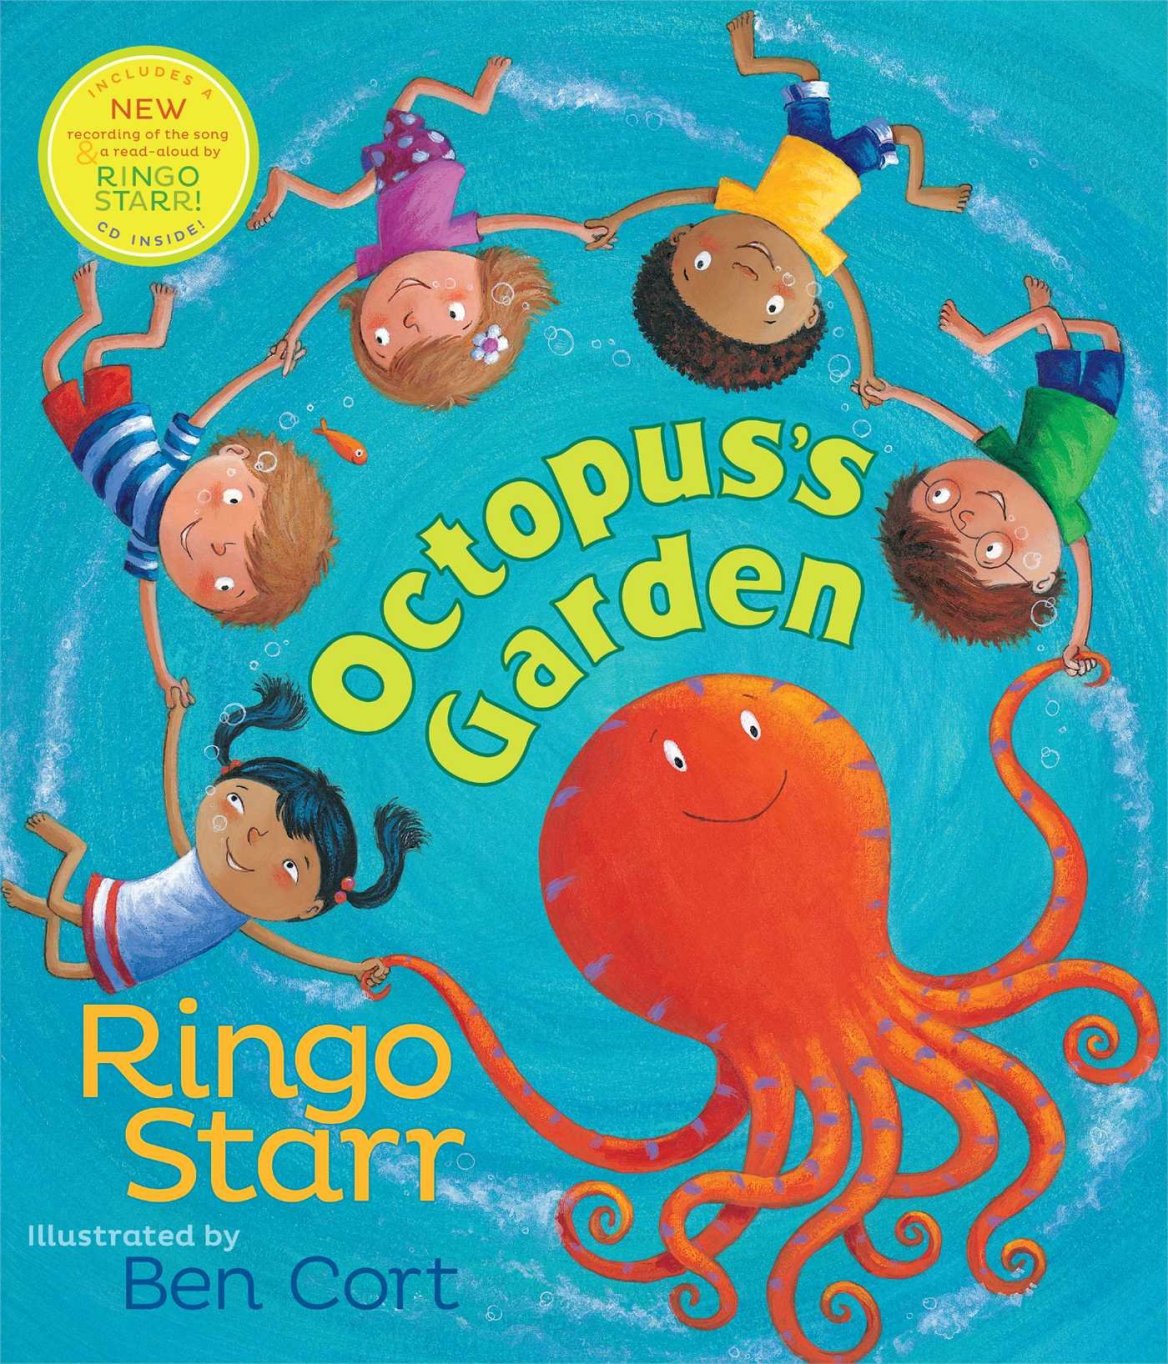 Beatles BlogRingo’s “Octopus’s Garden” Children’s Book